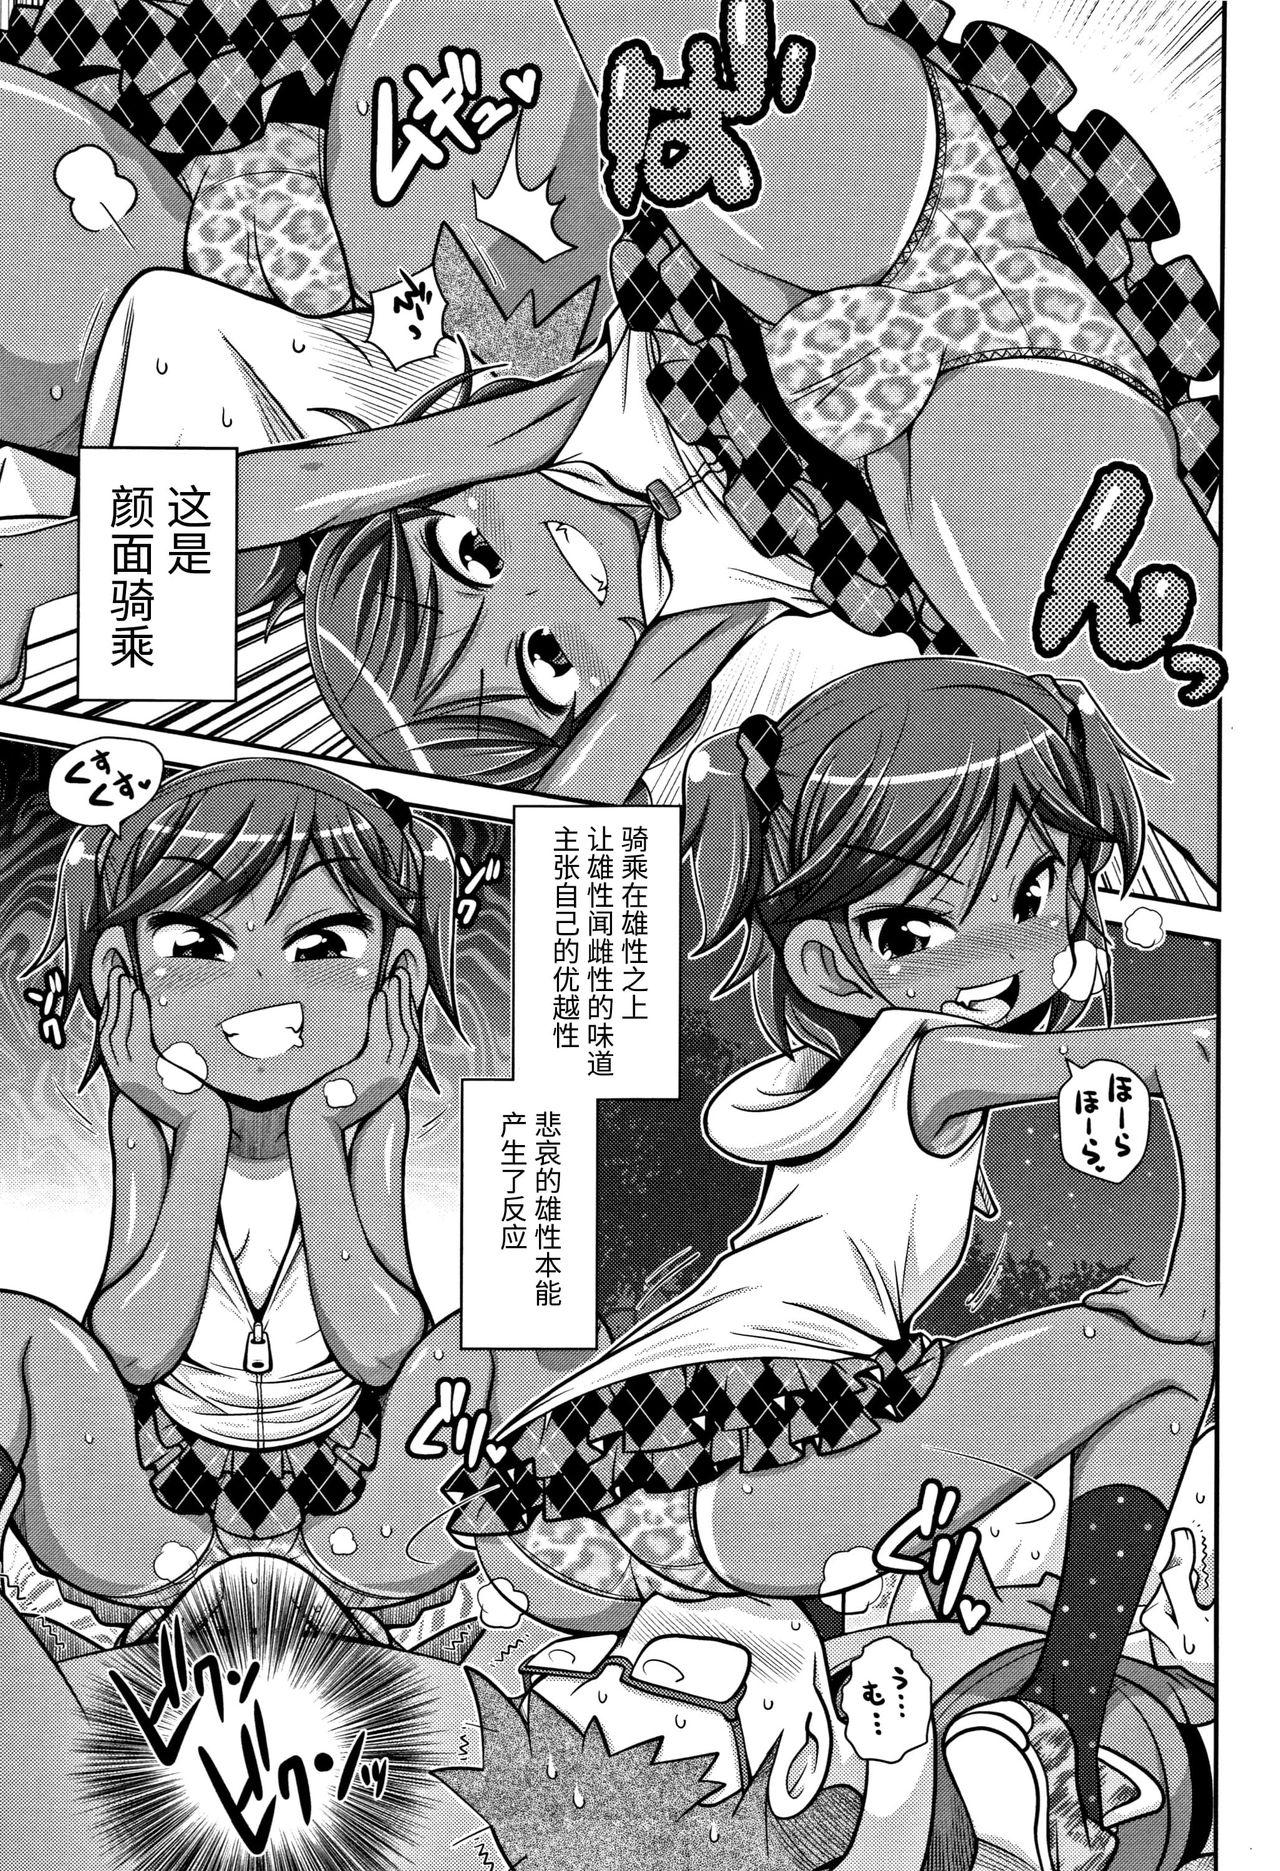 Soapy Satsuki Itsuka Theatre #9 Gilf - Page 3